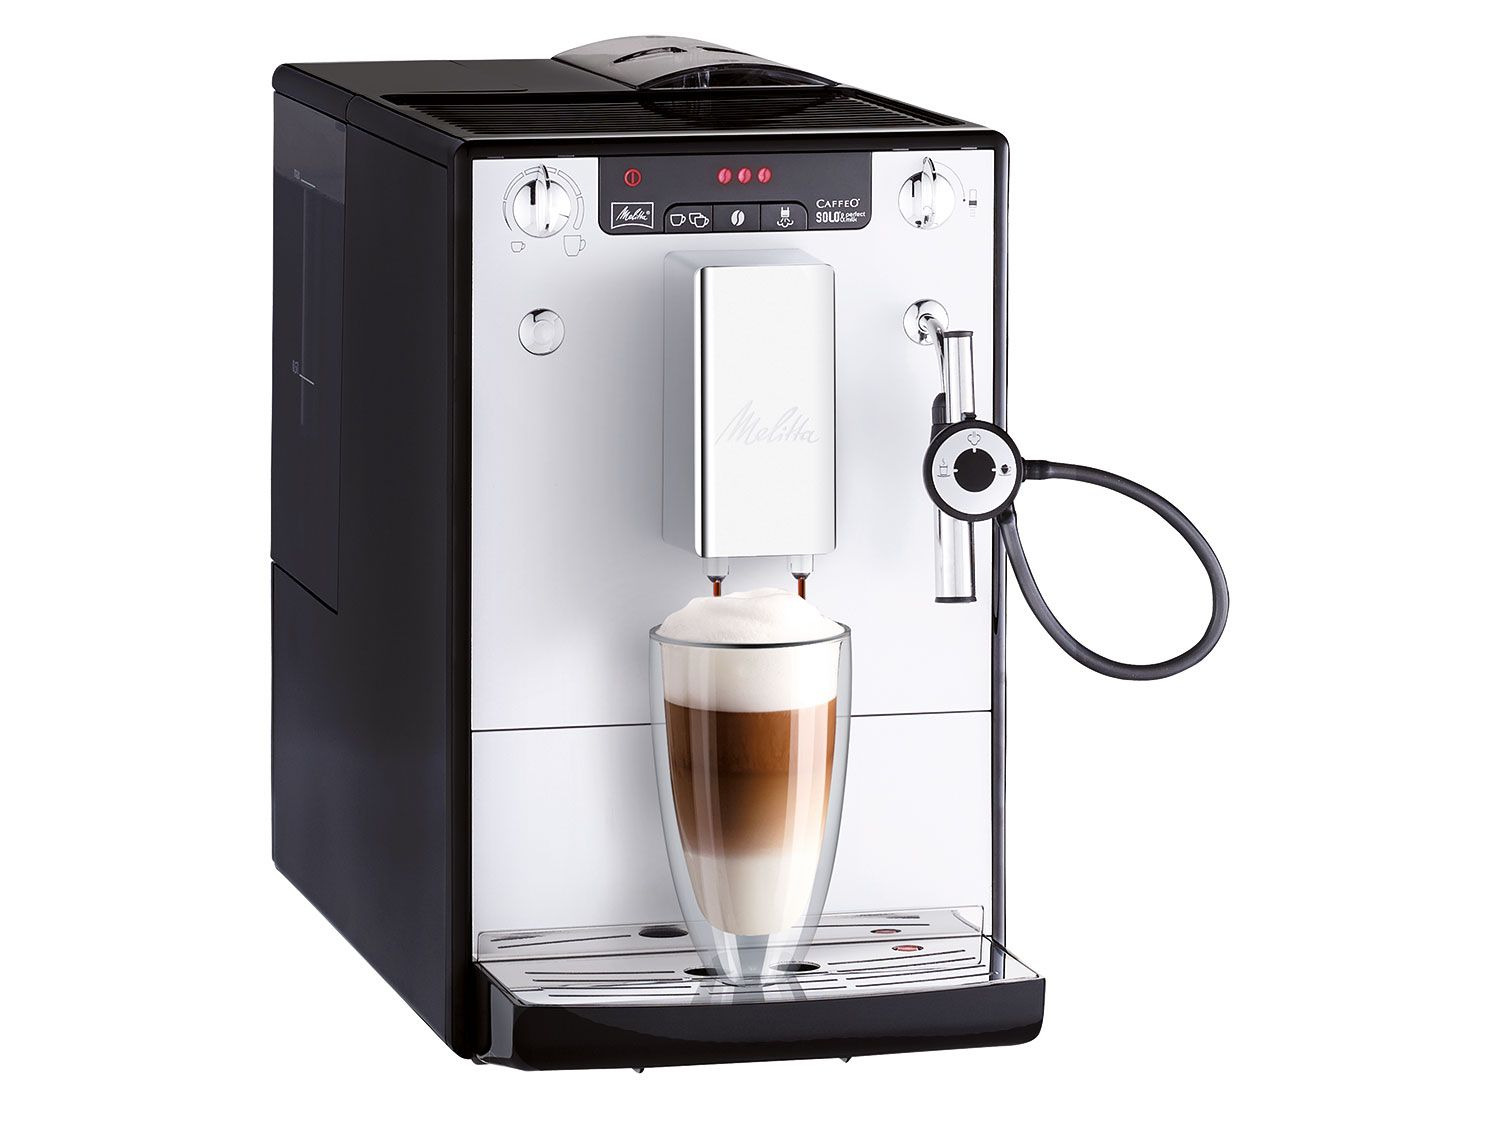 verwijzen Ziektecijfers Installatie Volautomaat espressomachine E-957-103 kopen? | LIDL